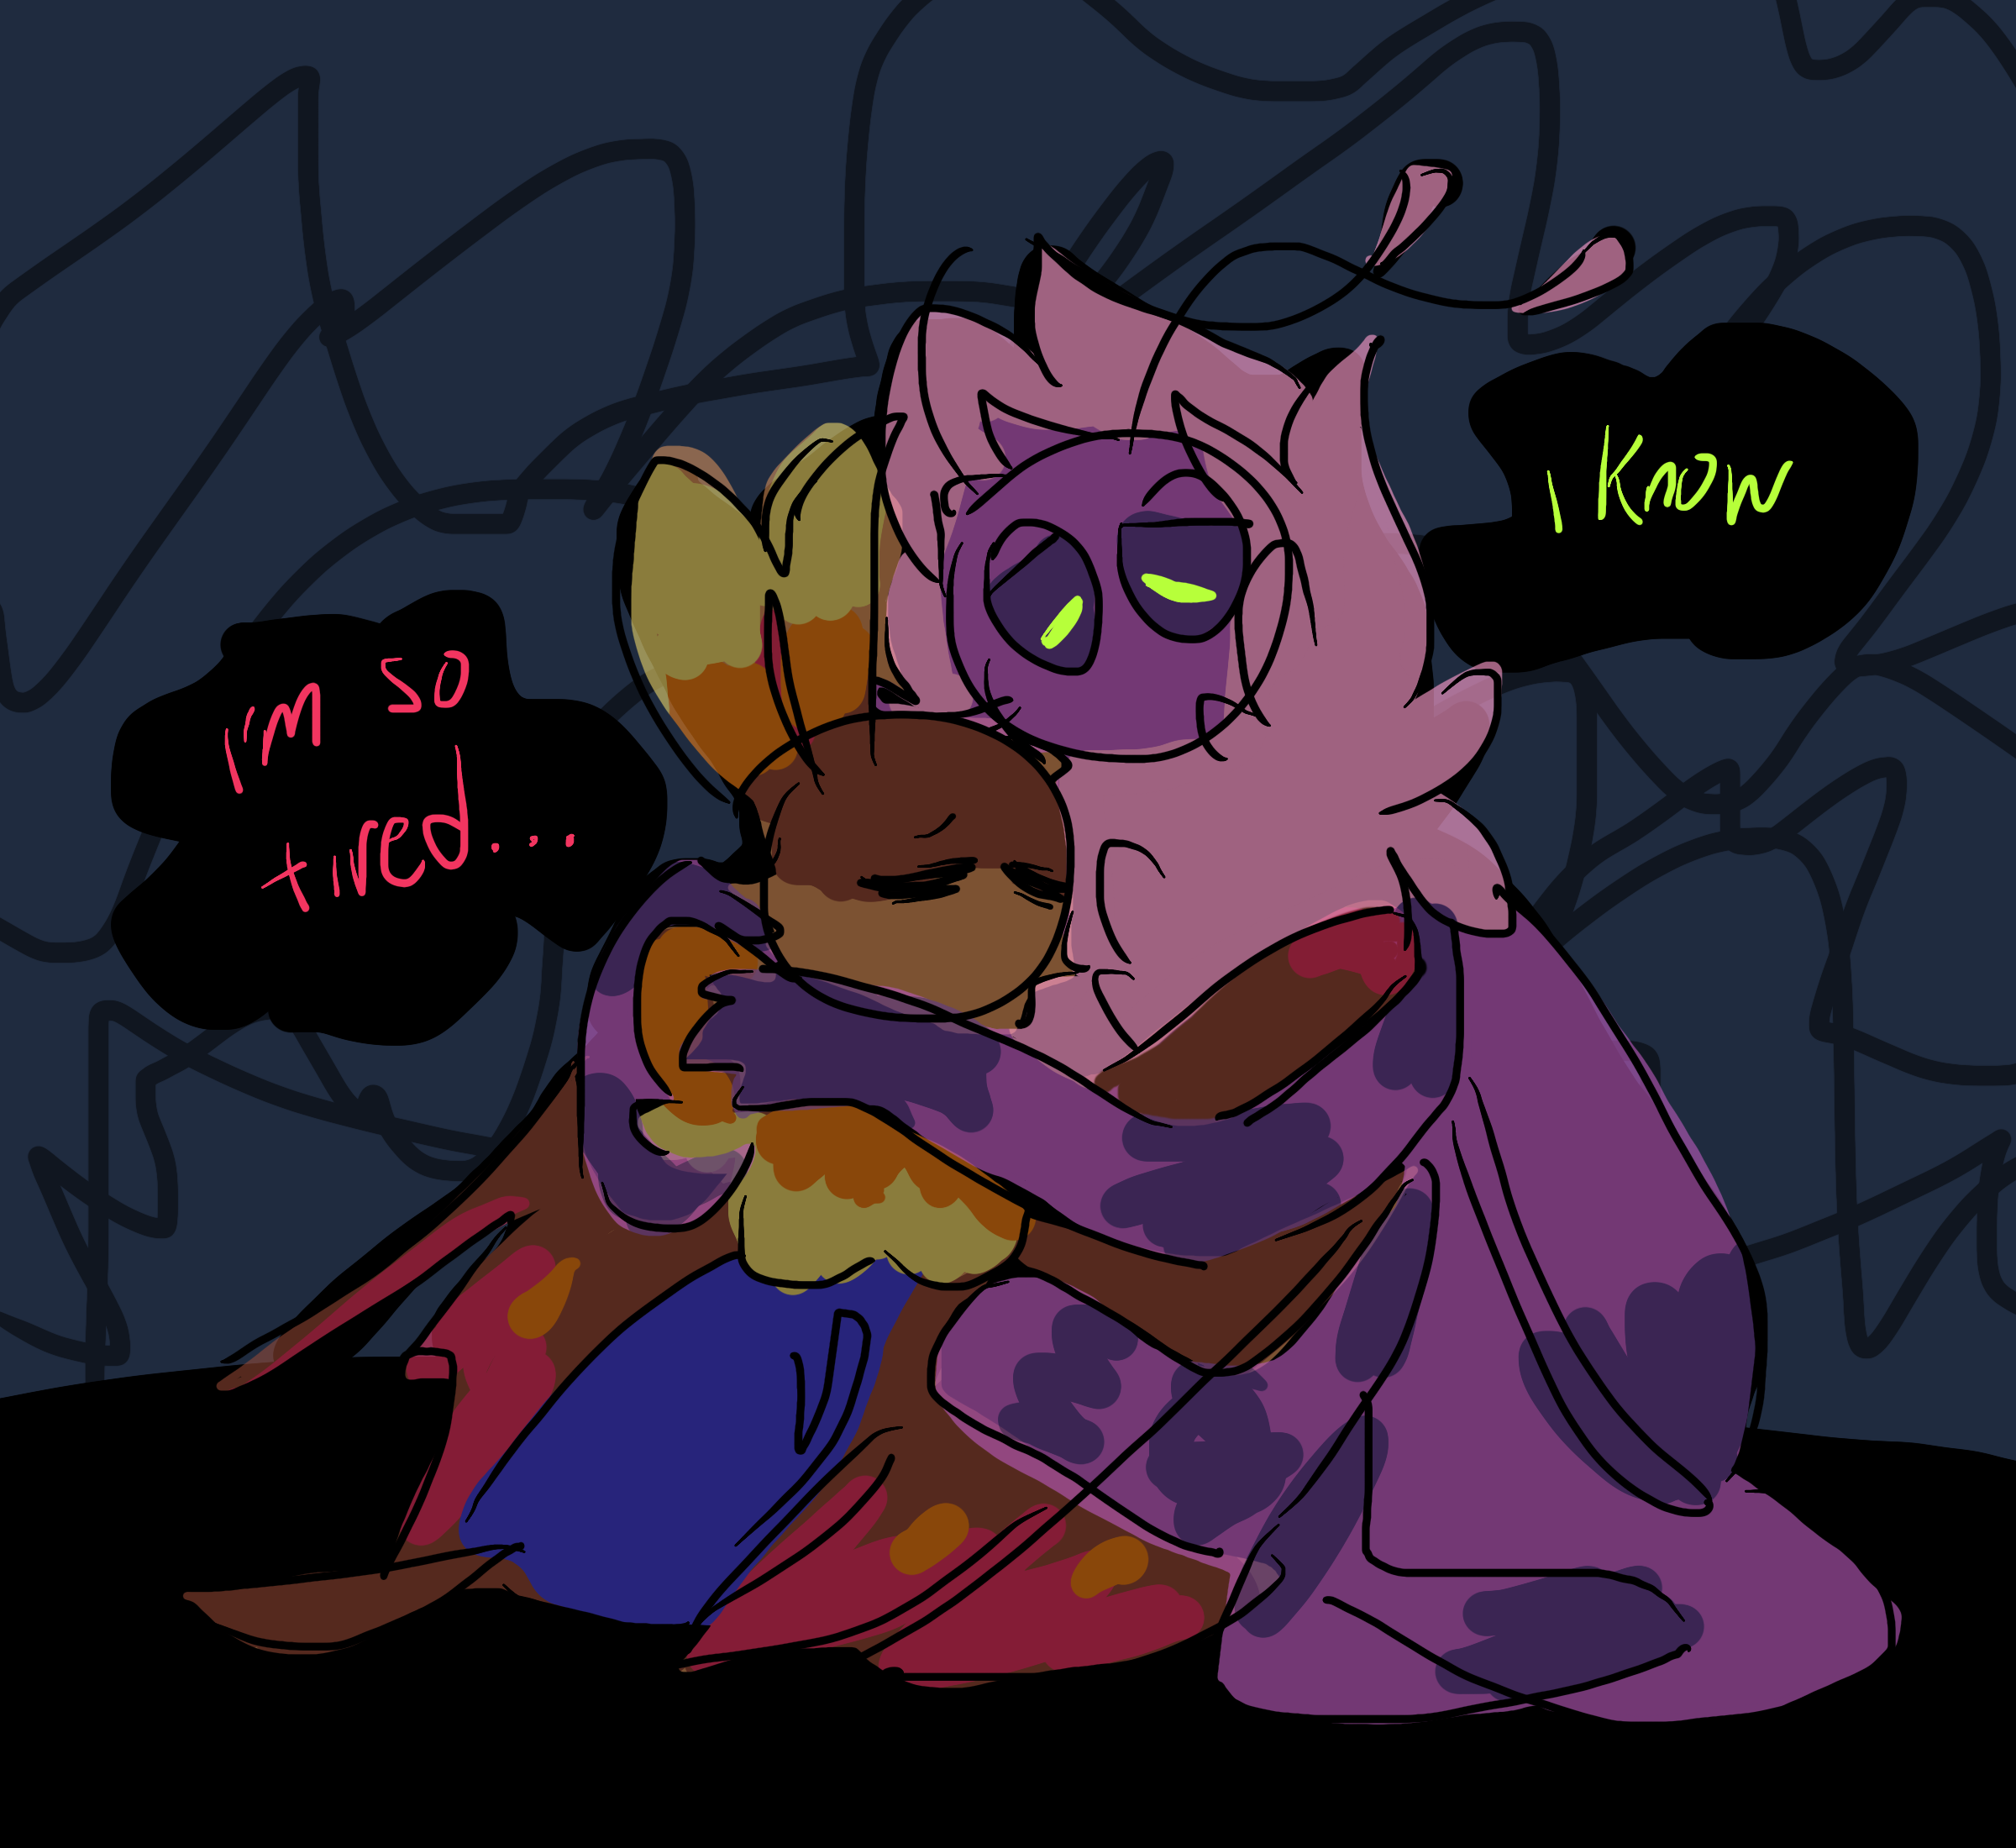 moth/bat hug